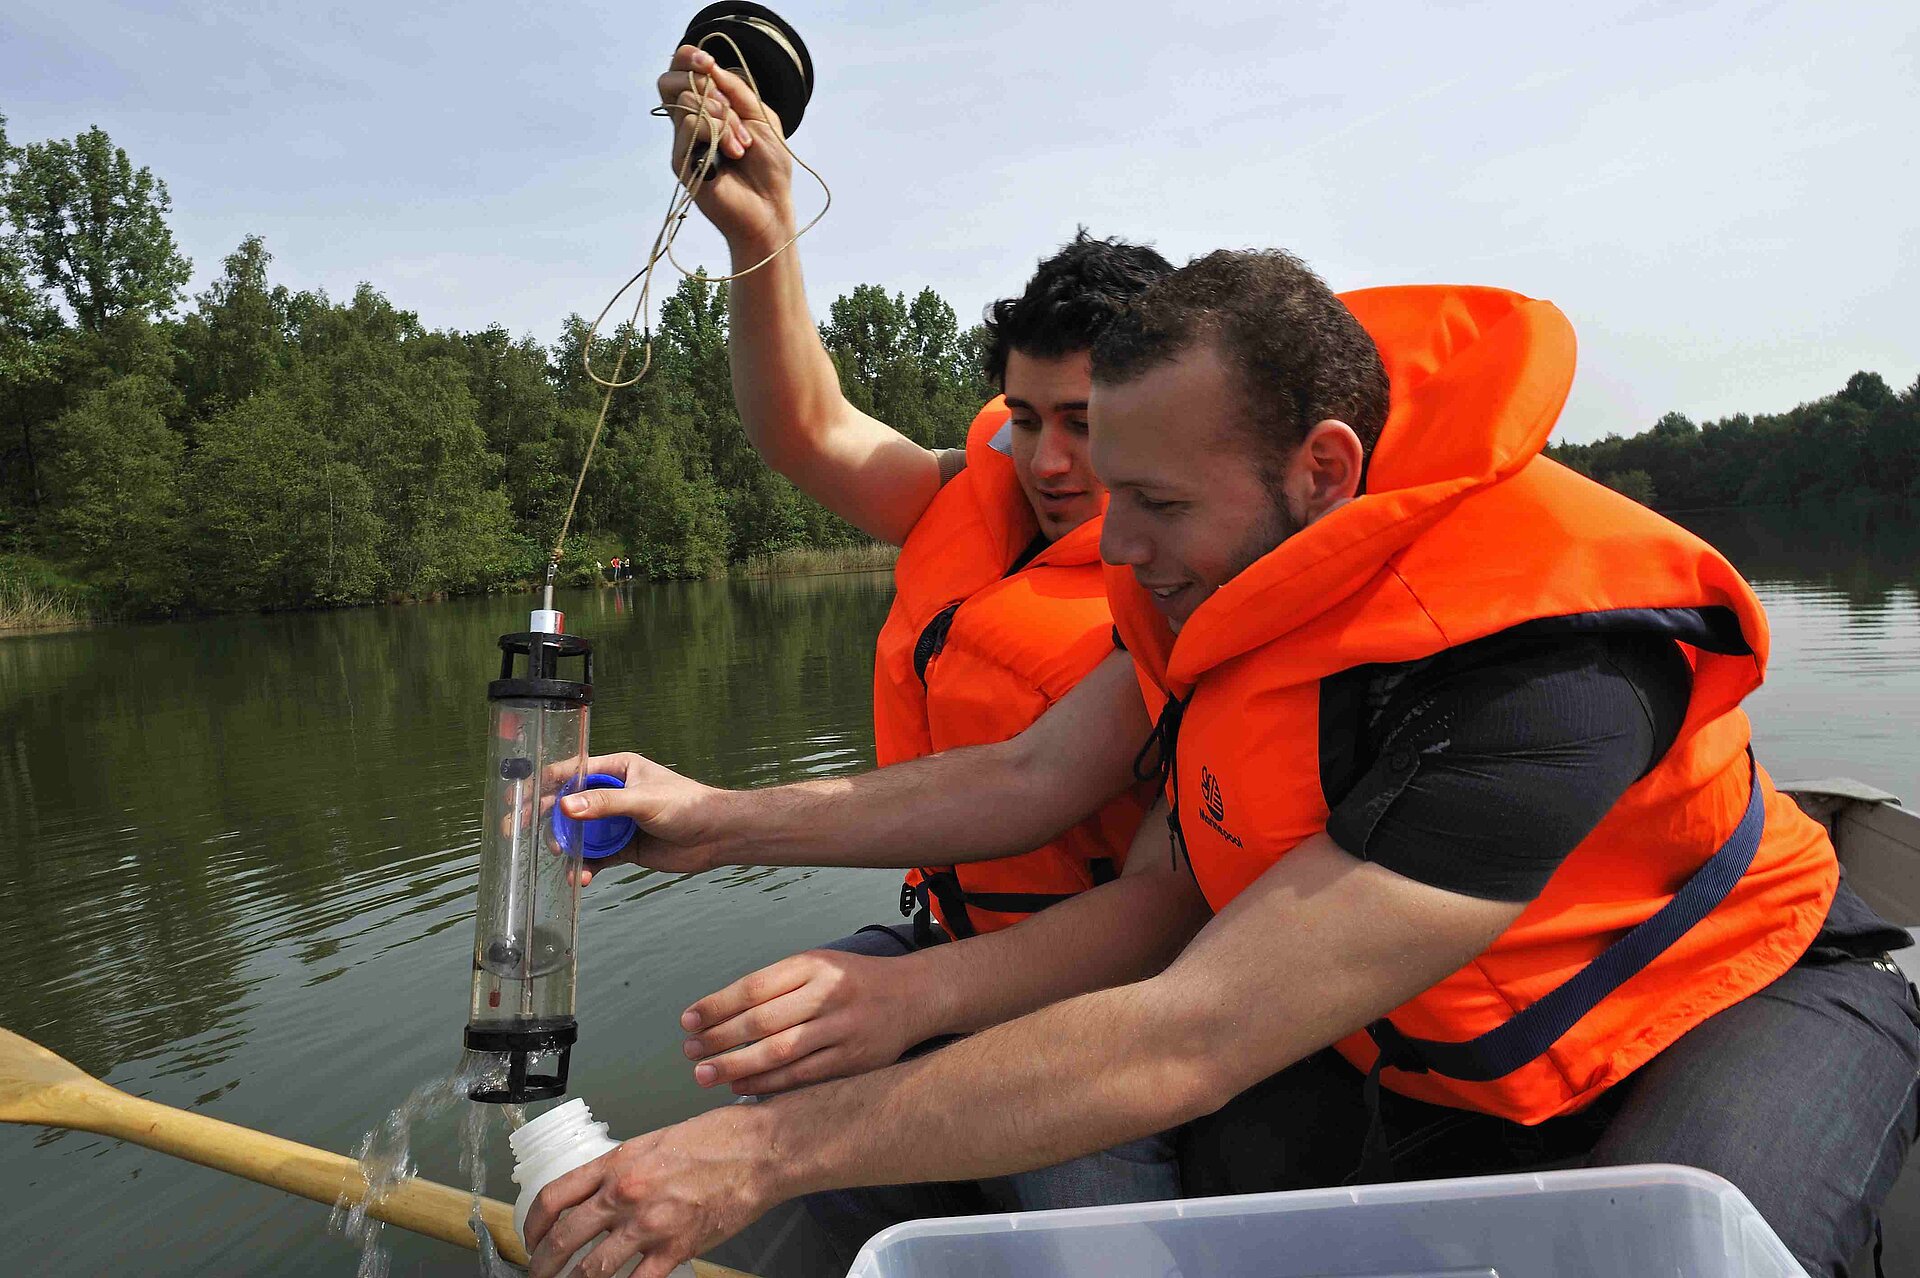 Zwei Schüler in Schwimmwesten sitzen in einem Boot und entnehmen Gewässerproben